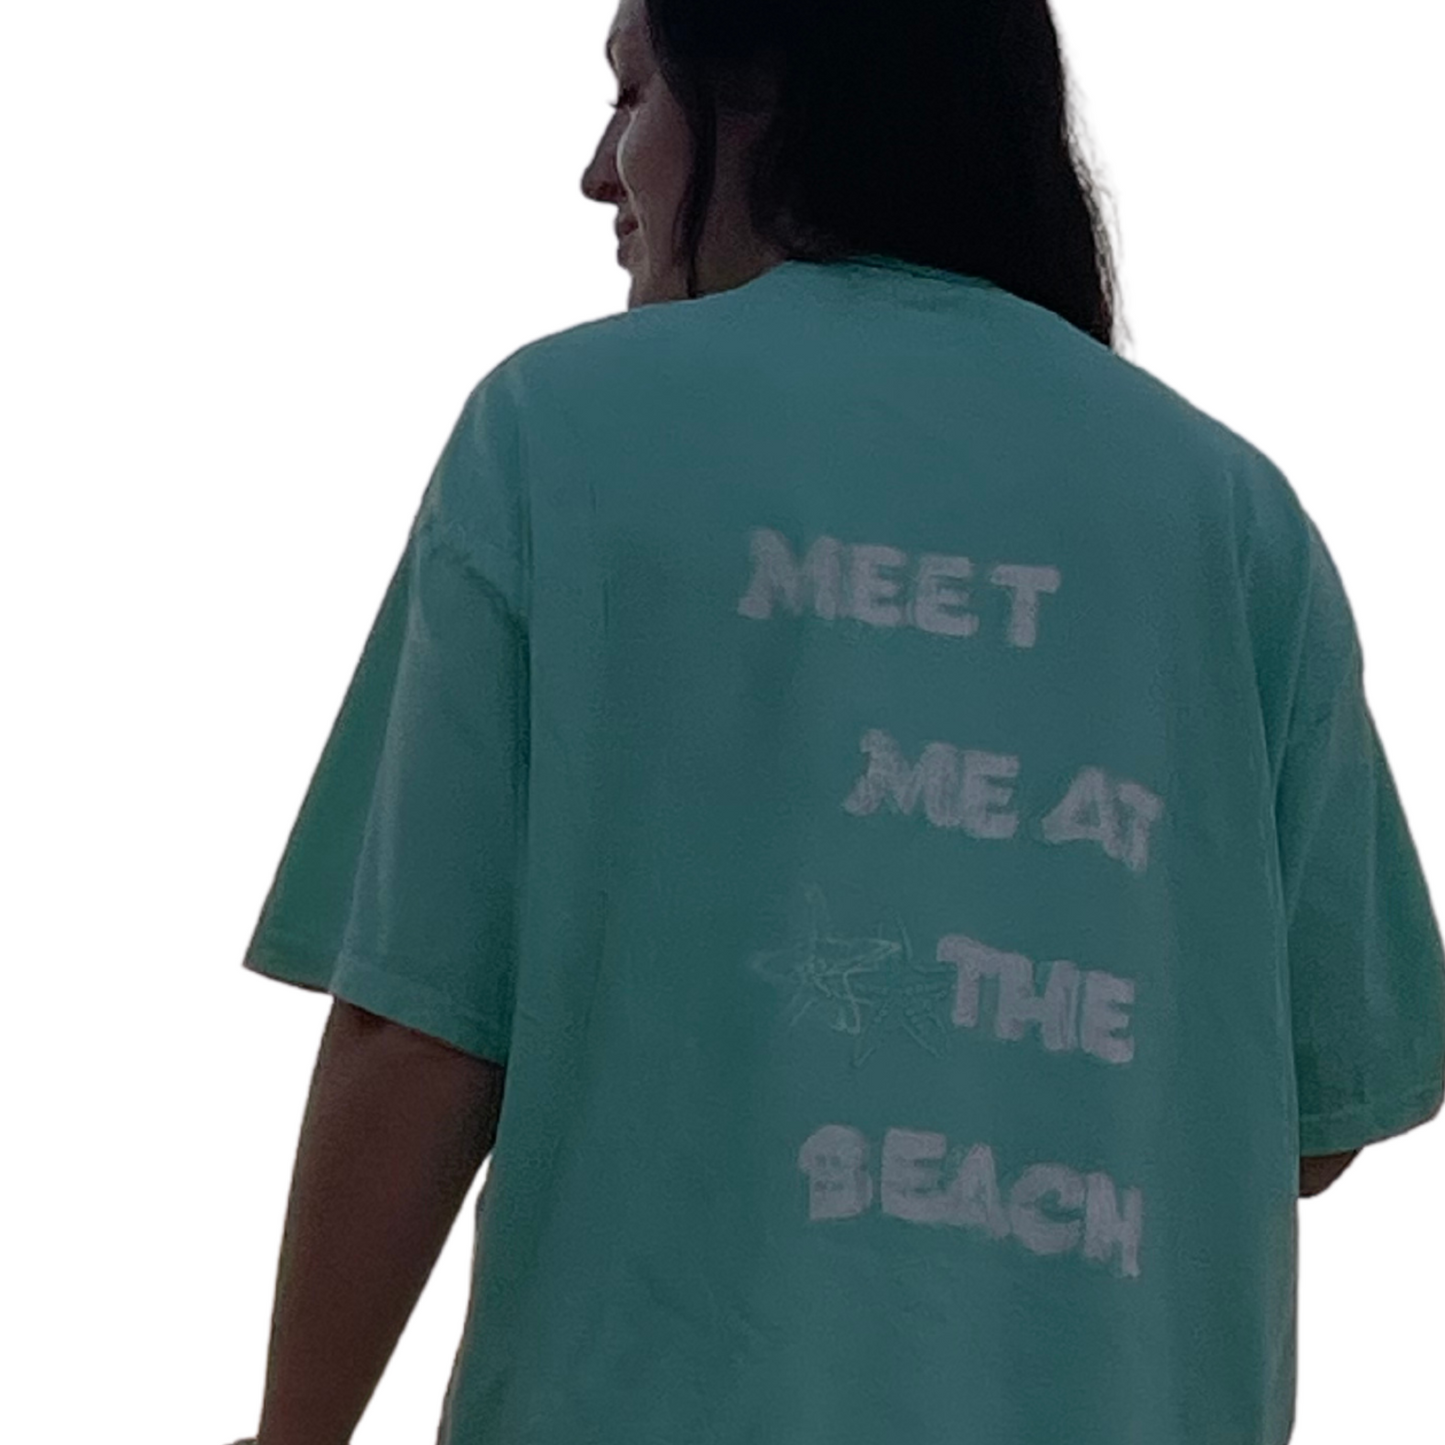 MEET ME AT THE BEACH